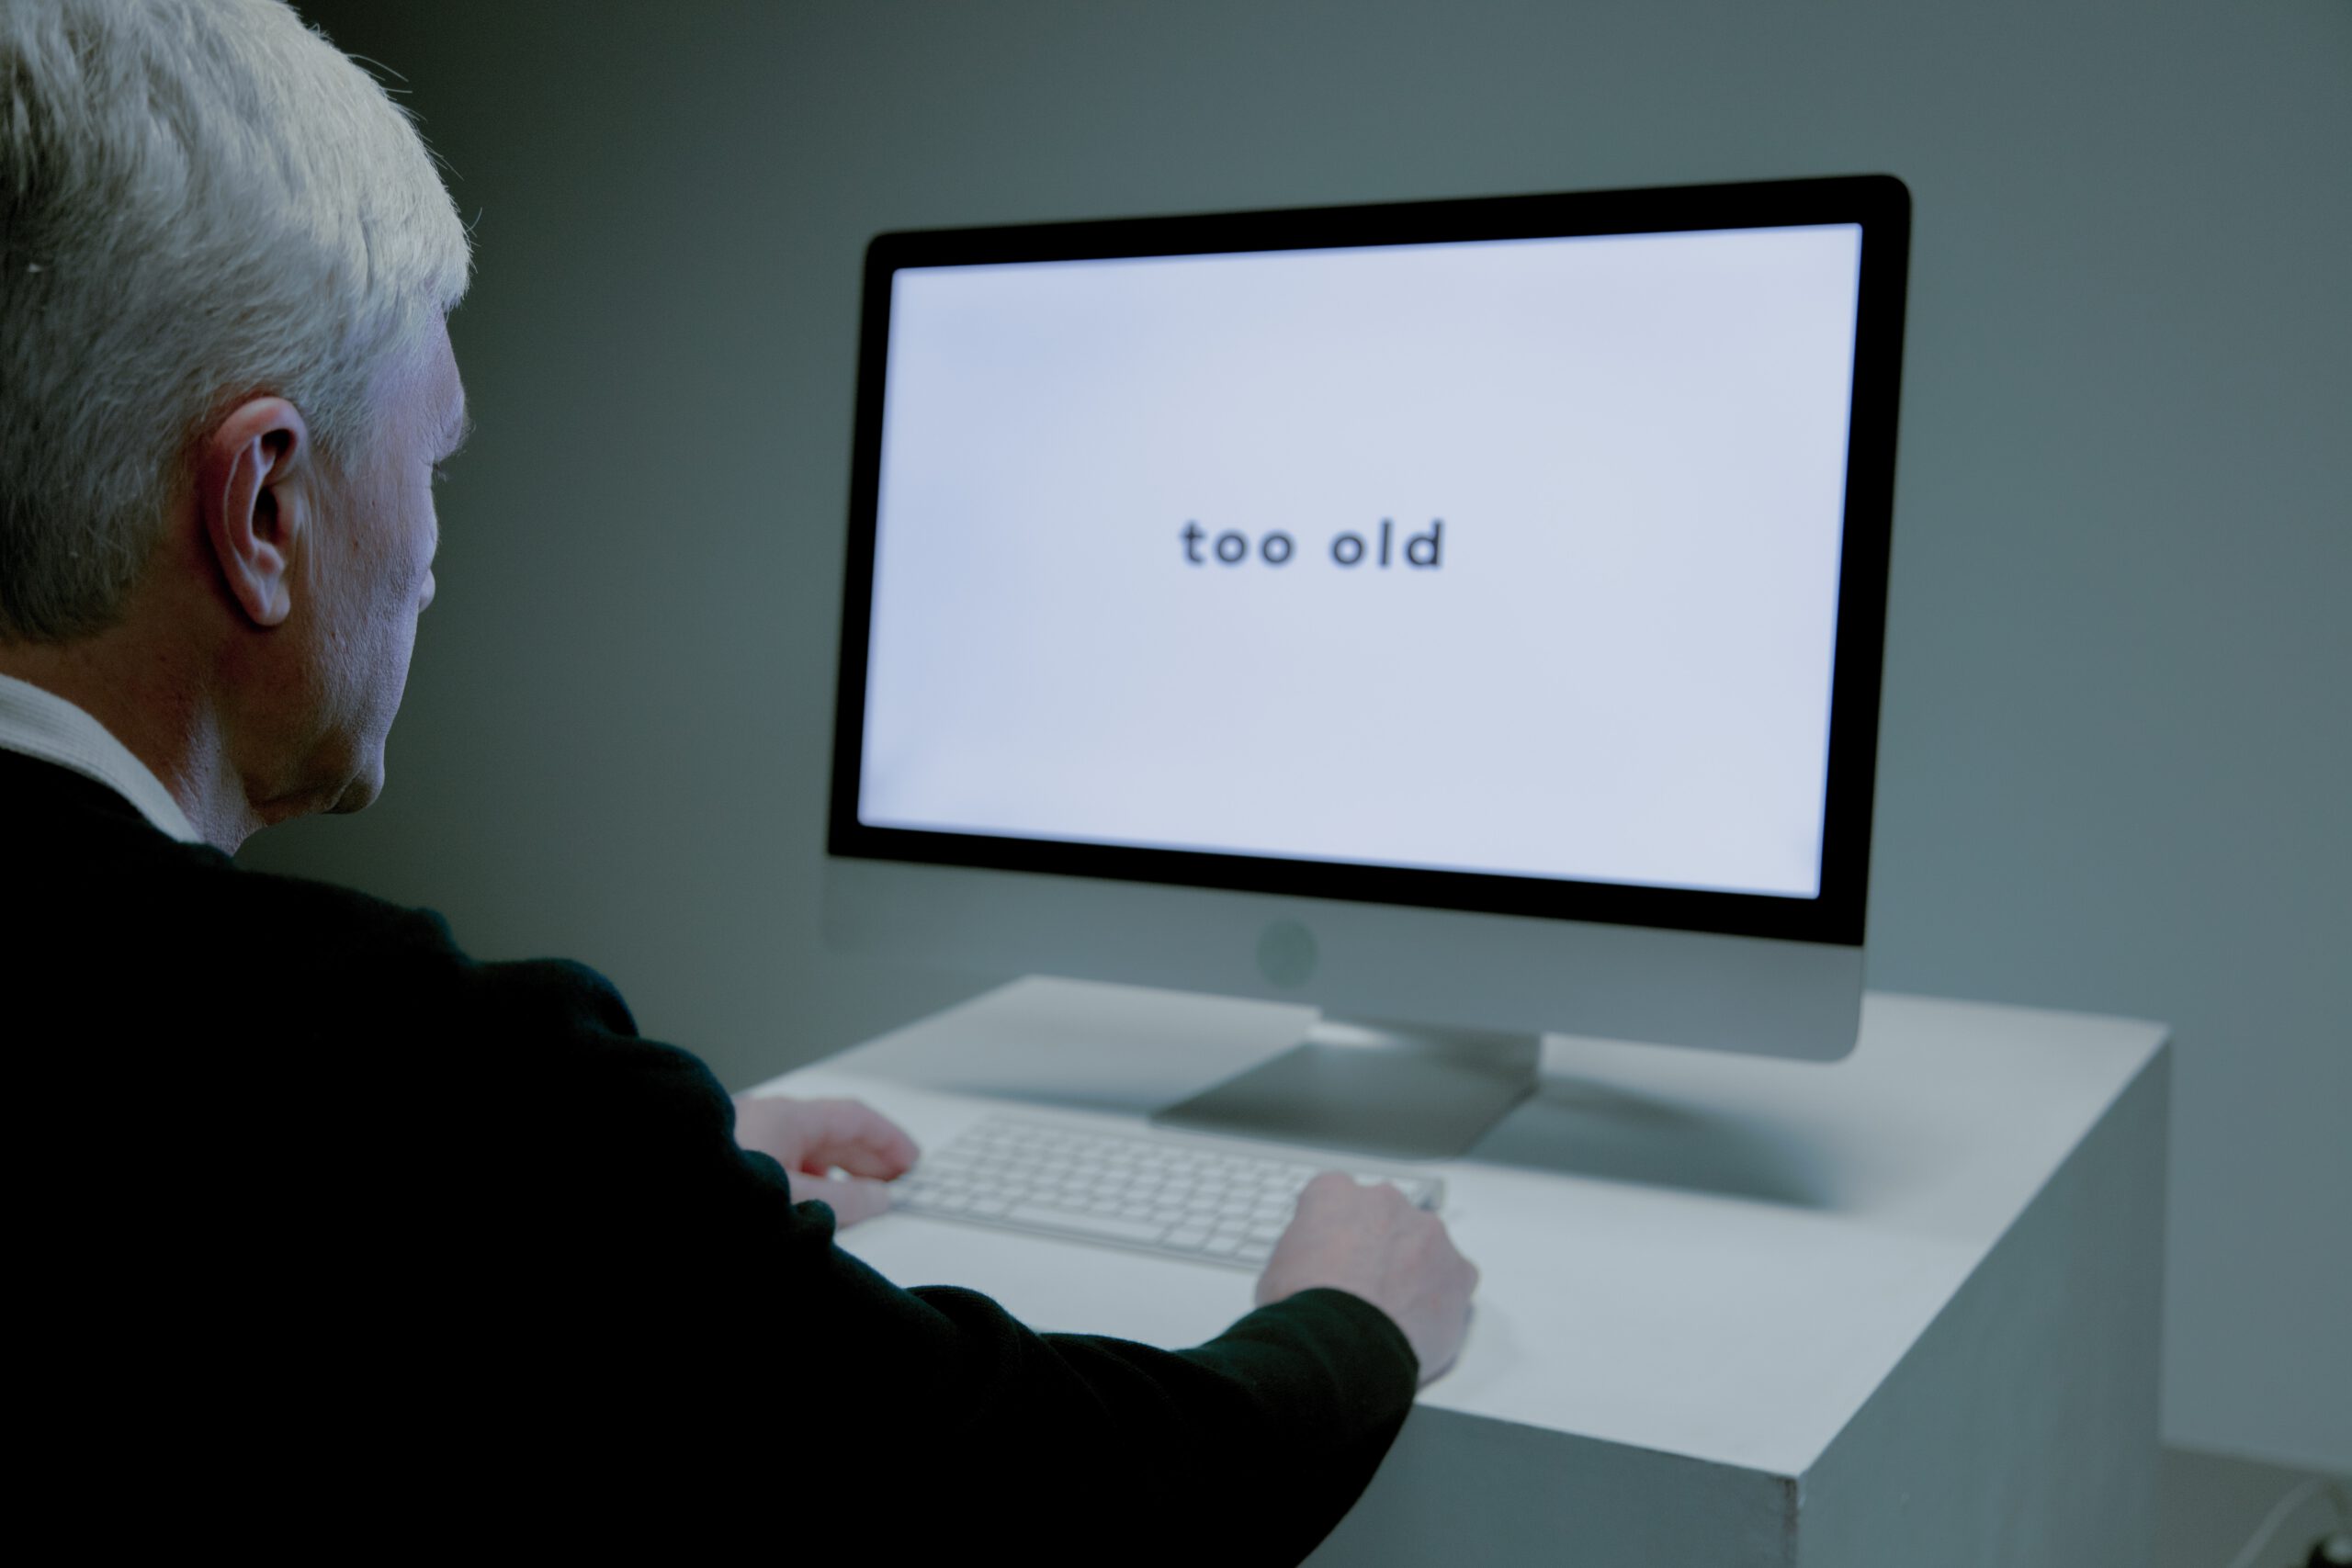 Starszy mężczyzn na bezrobociu siedzący przed ekranem komputera z wyświetlonym napisem too old